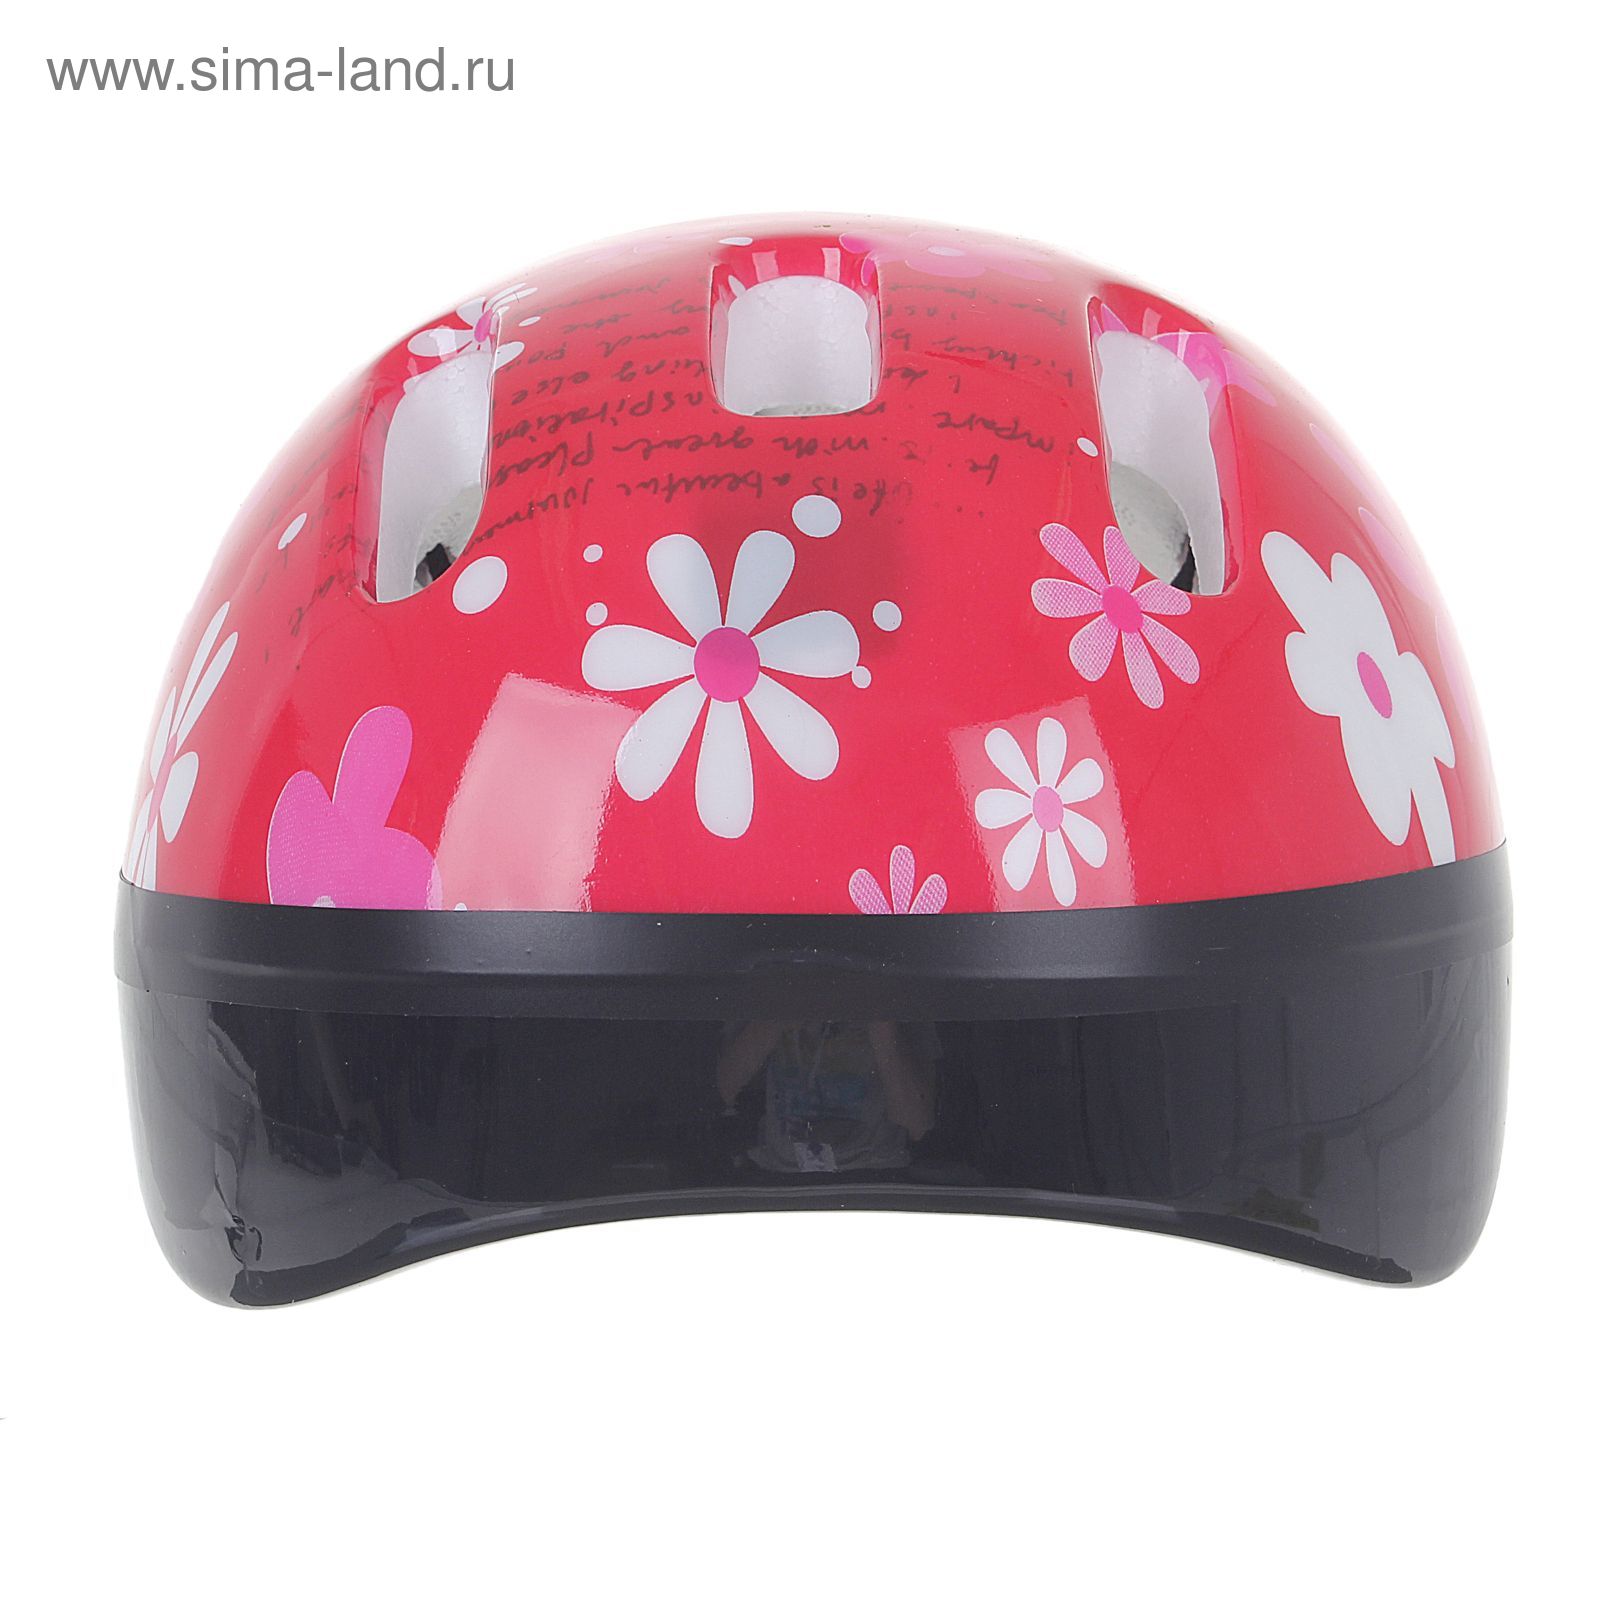 Шлем защитный OT-SH6 детский, р S (52-54 см), цвет: красный